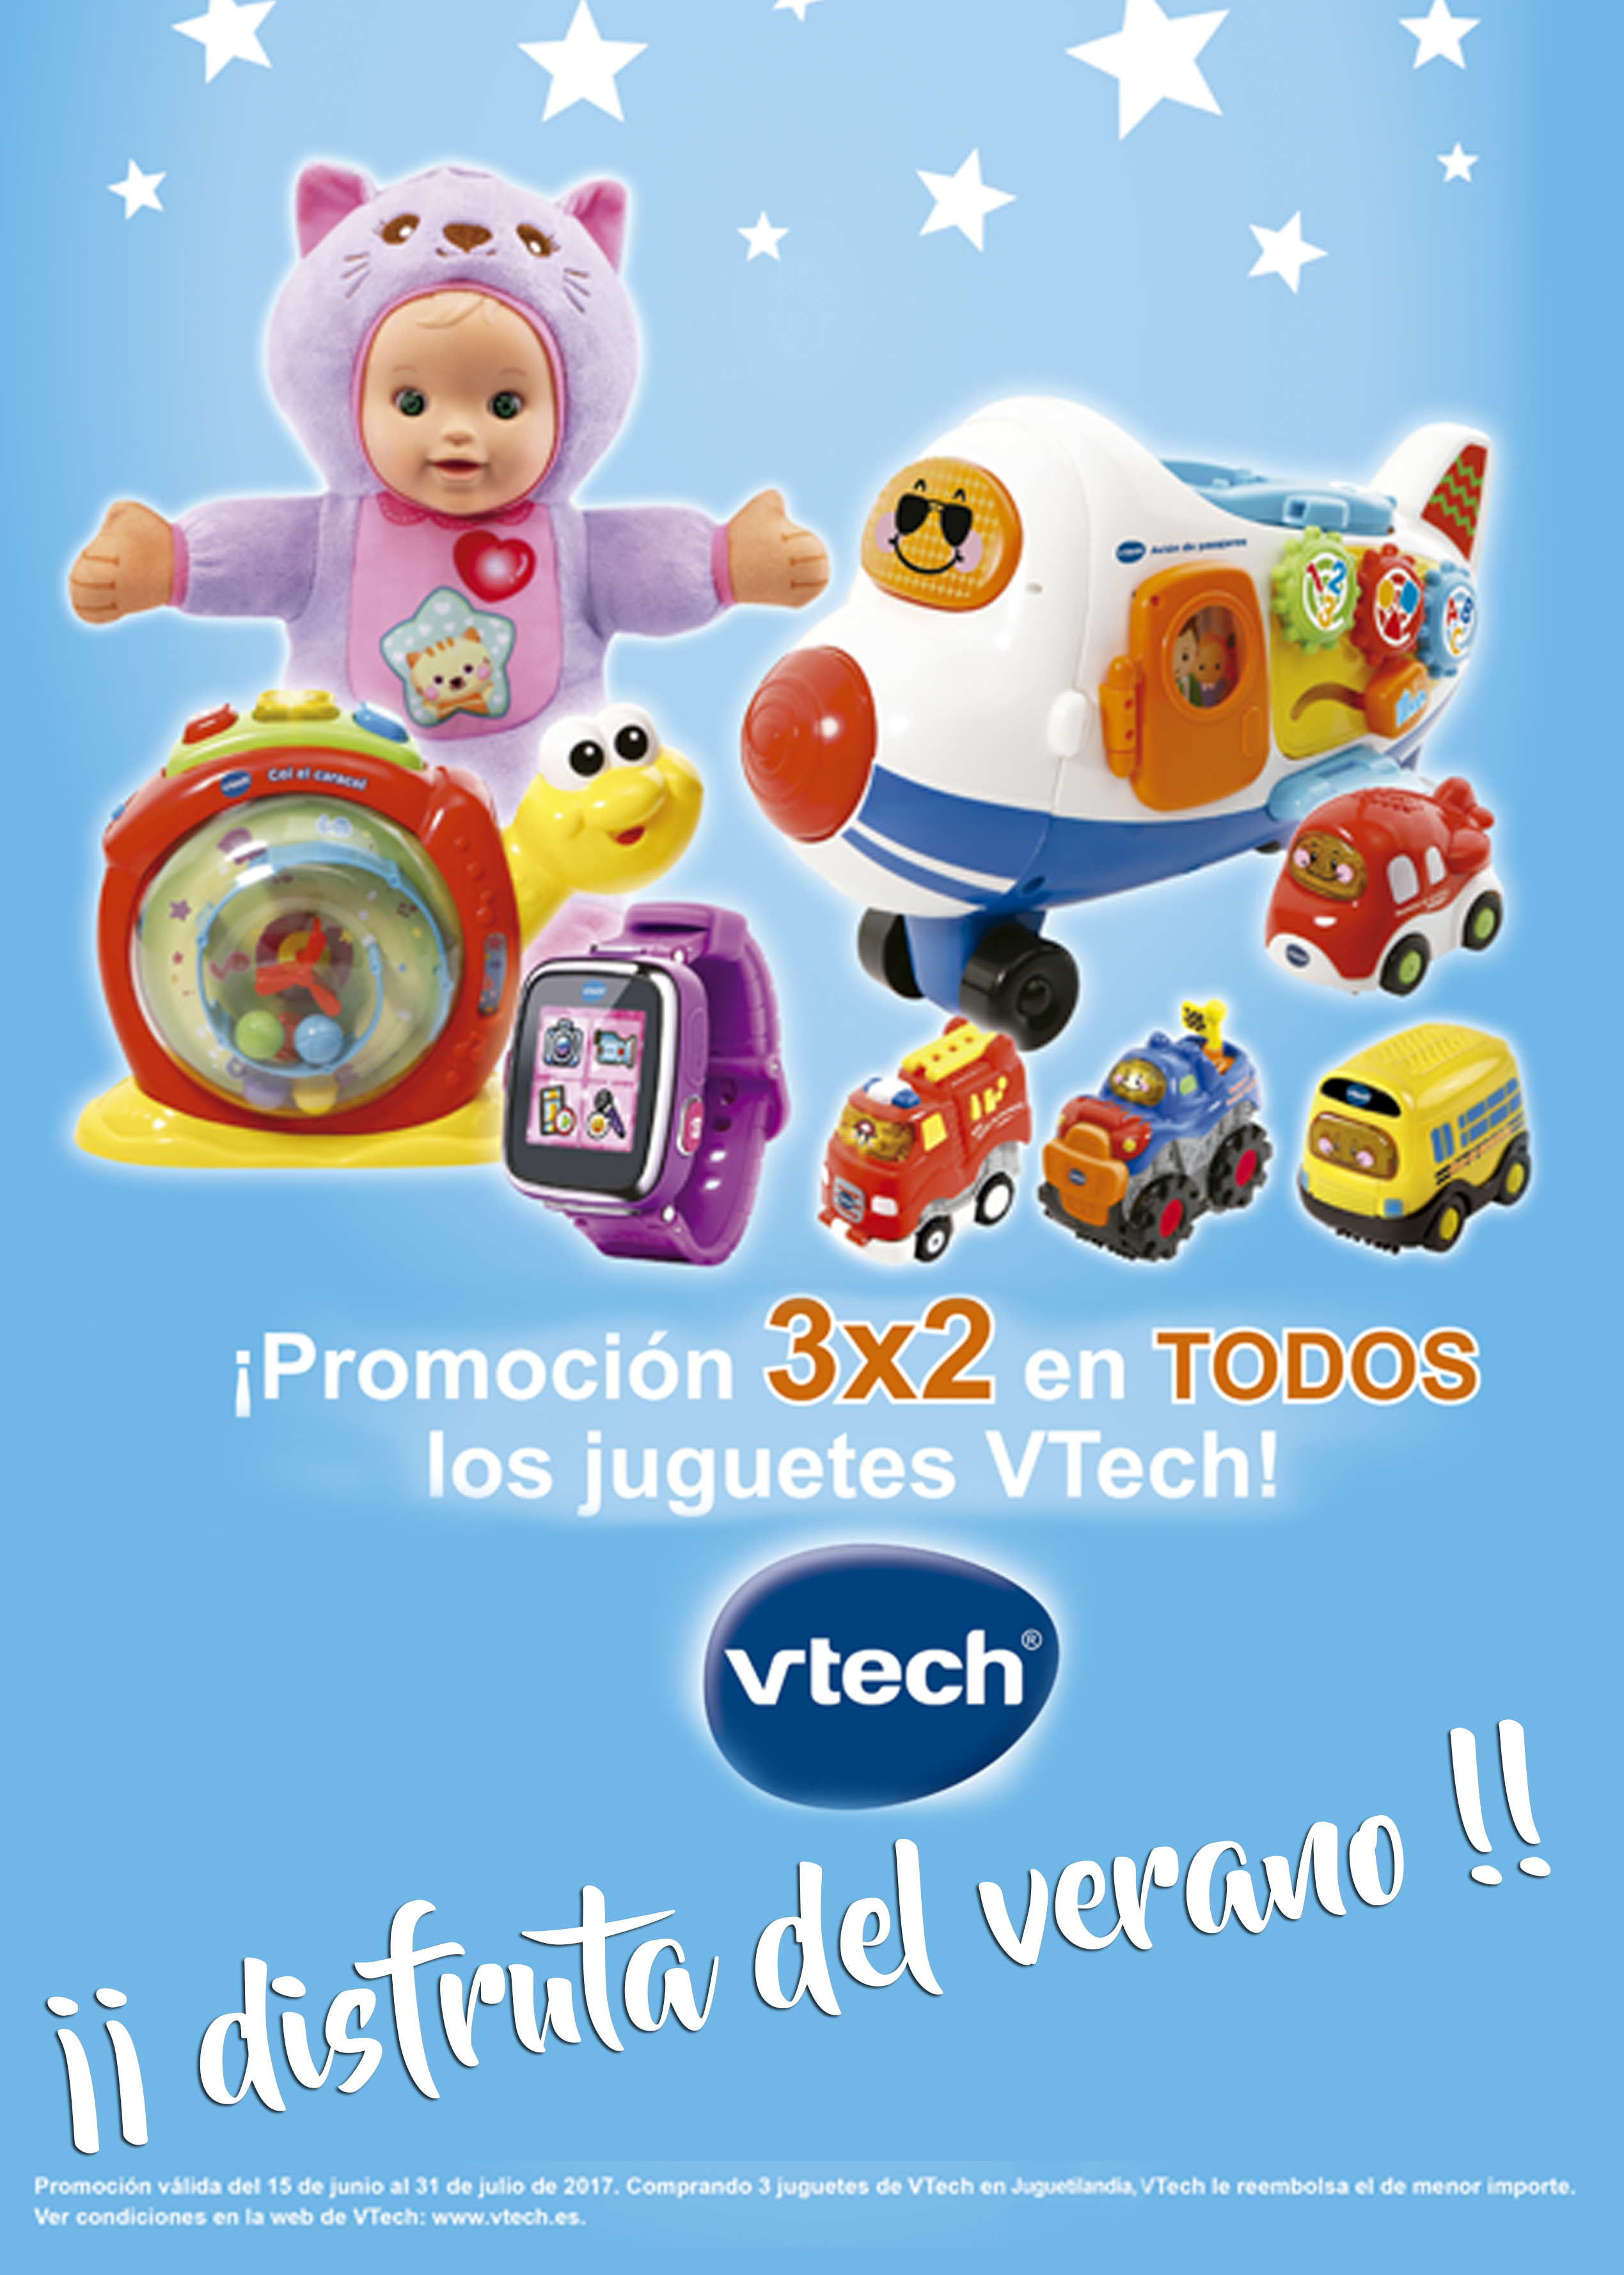 Promoción 3x2 en TODOS los juguetes Vtech